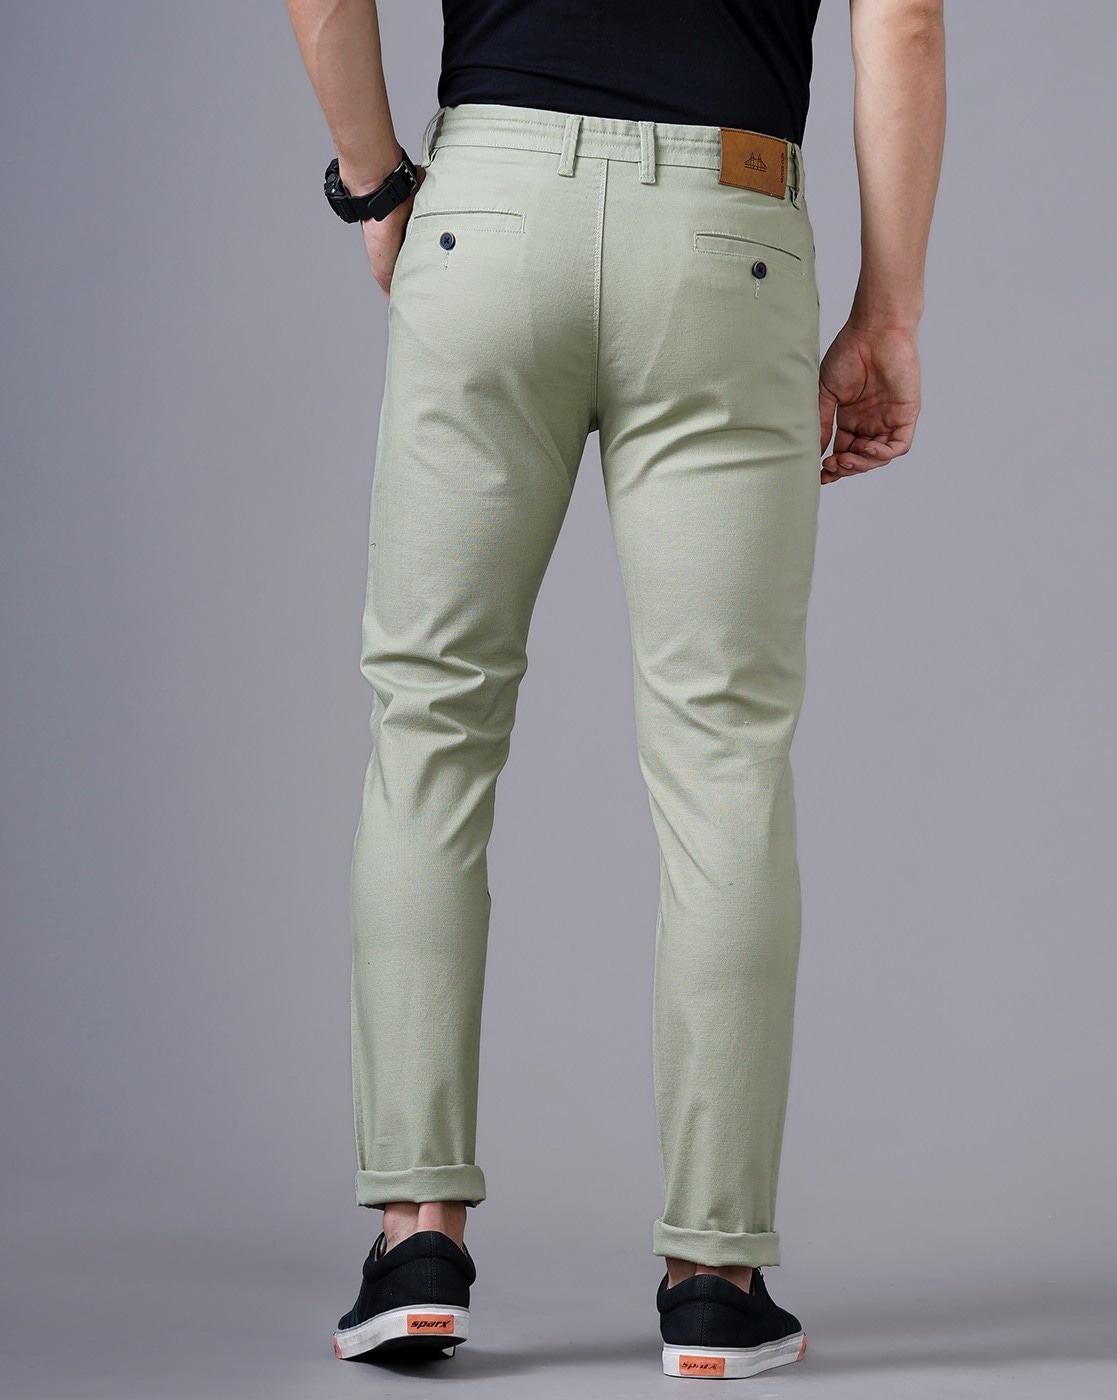 Buy Beige Pants for Women by Ethnicity Online | Ajio.com